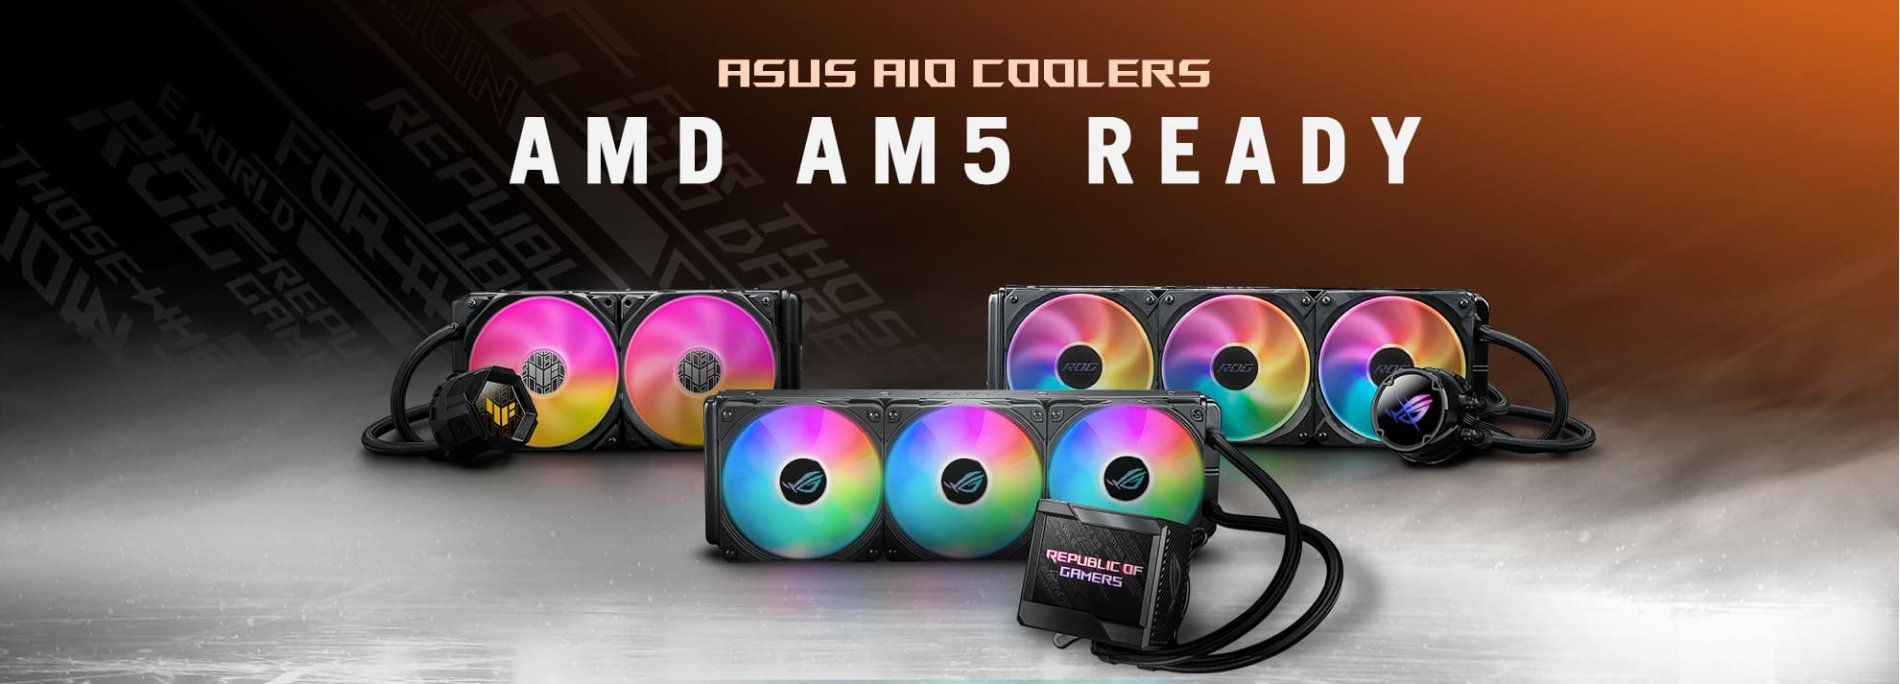 A ASUS oferece gratuitamente um Kit adaptador para as novas motherboards AMD AM5 a quem já tenha um Cooler AIO da ASUS